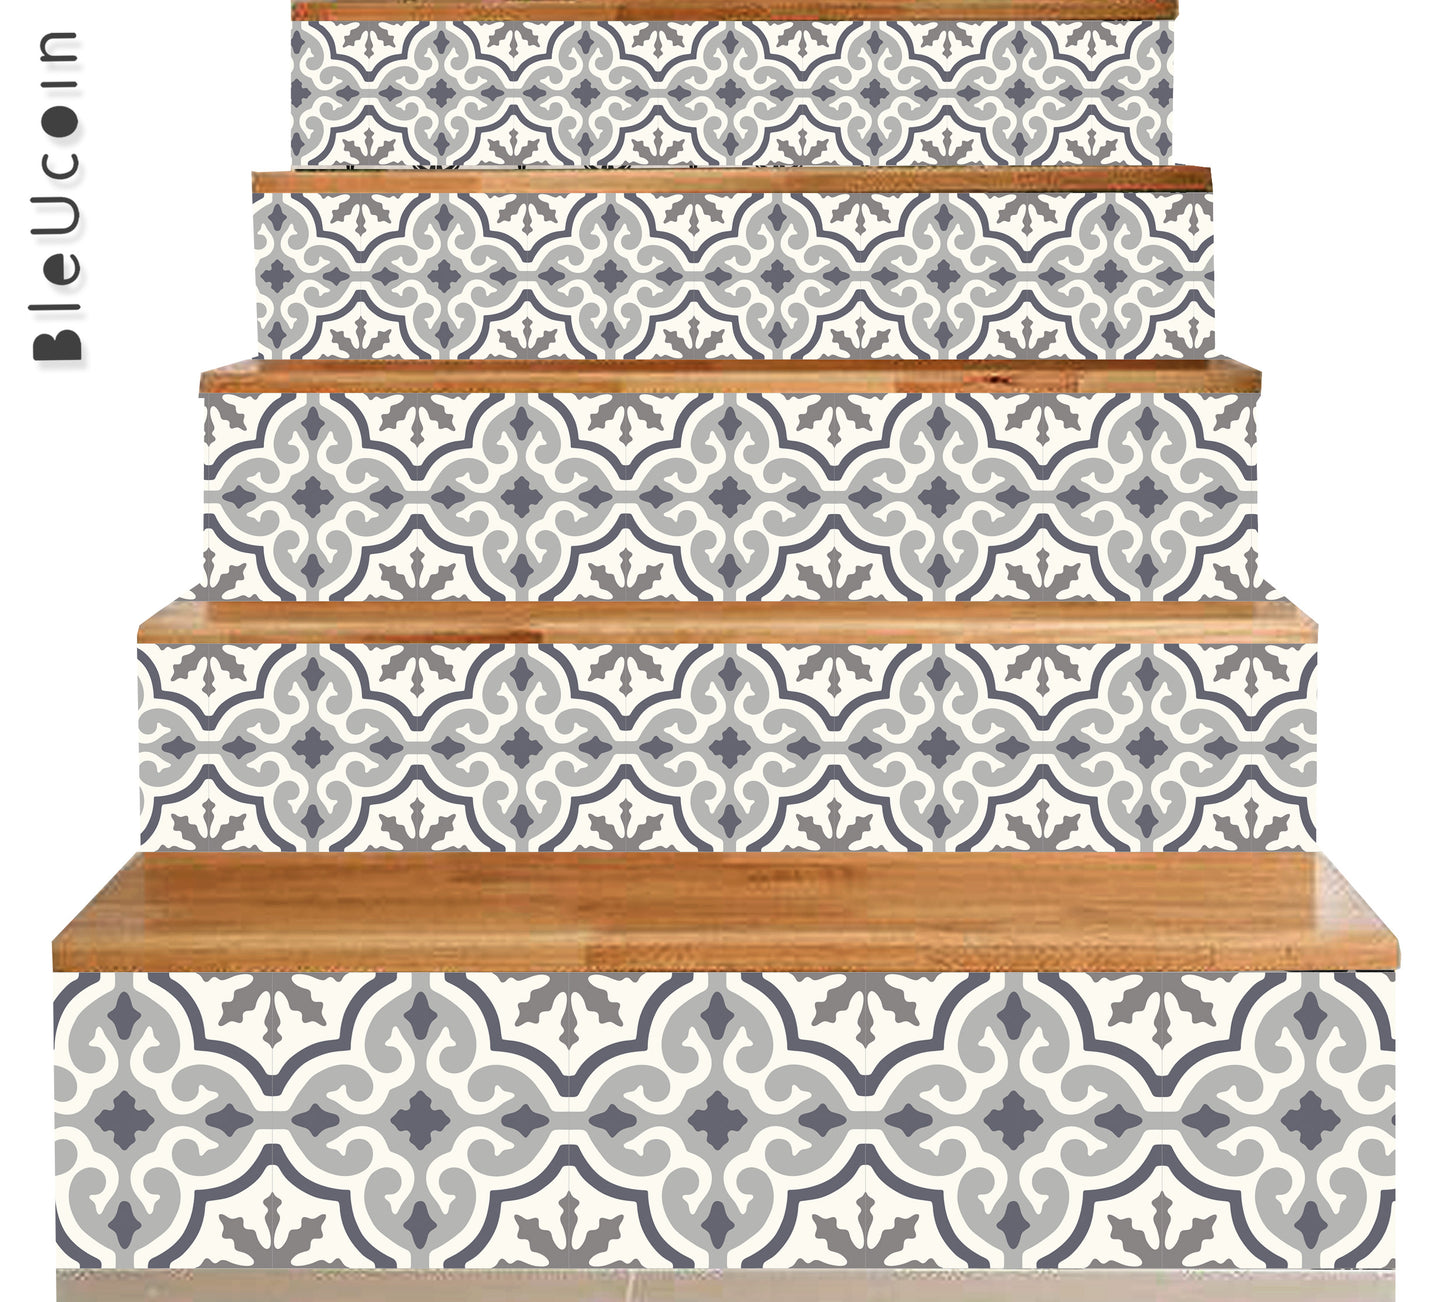 50% DISCOUNT - Valencia Stair Riser 8"x 49" - 5 Strips